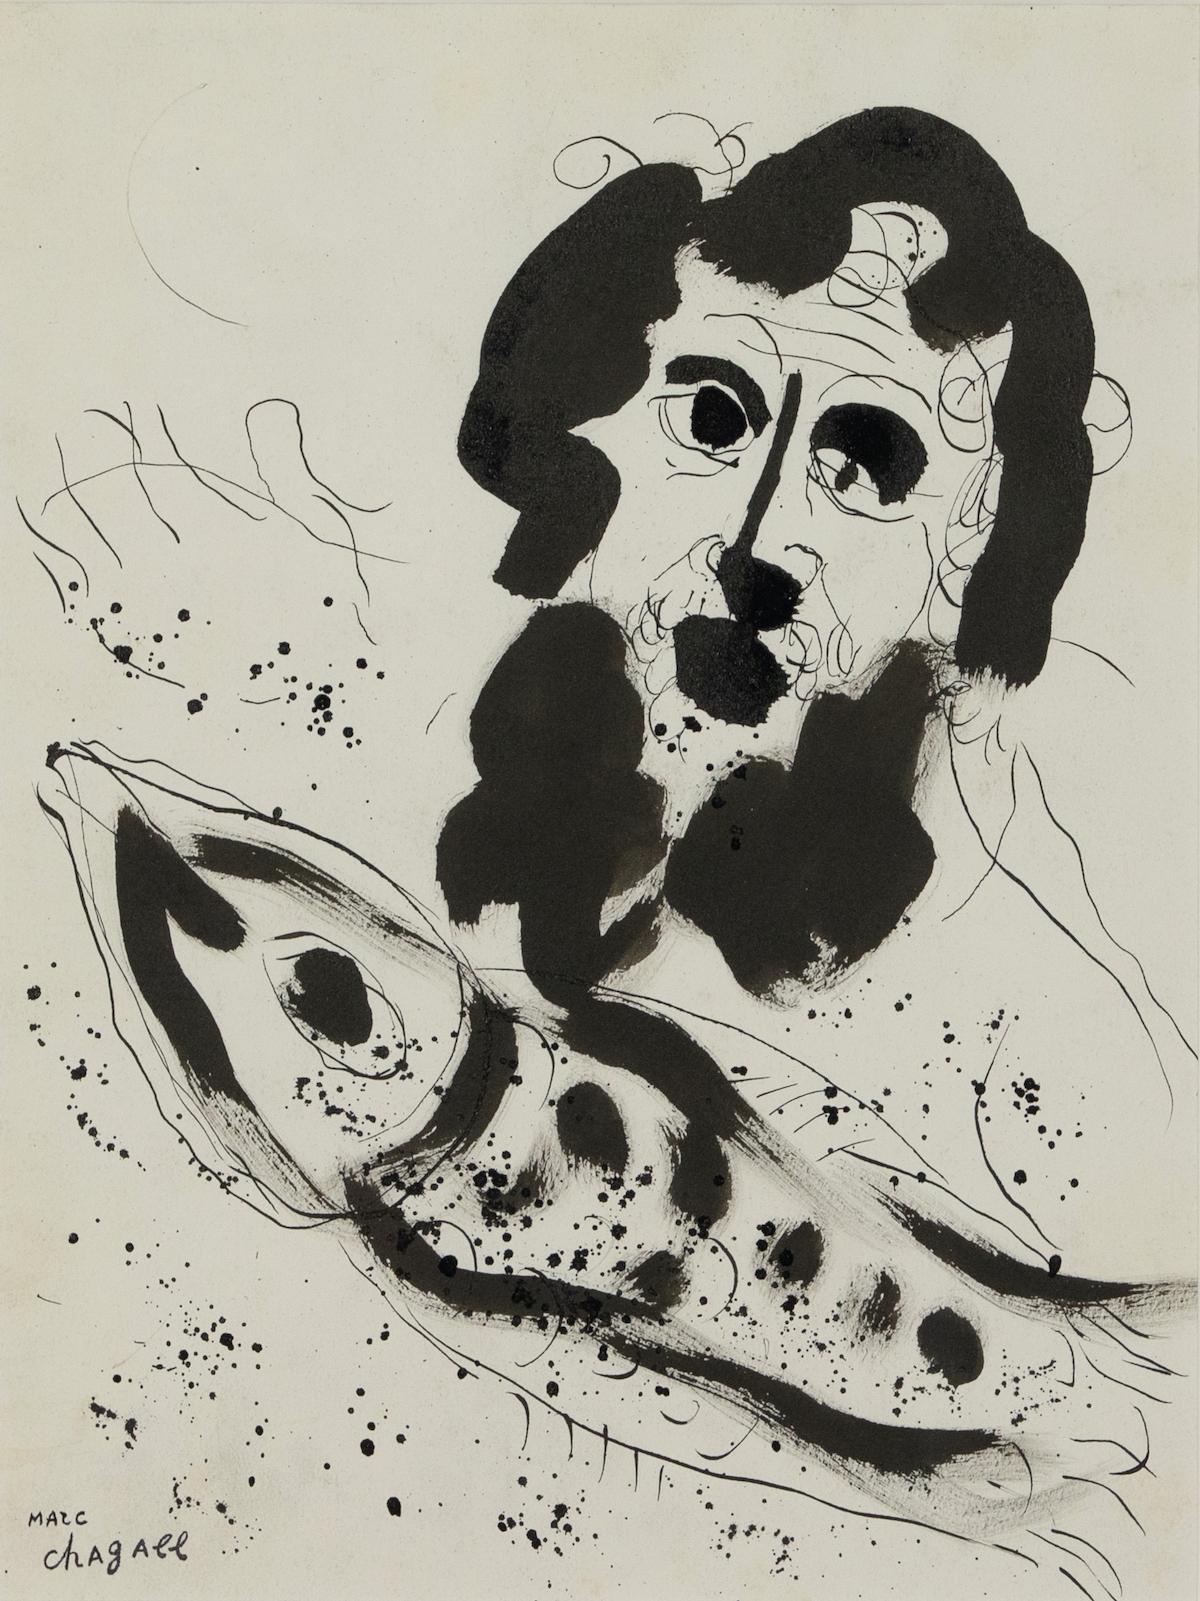 Jonas par Marc Chagall - École de Paris, artiste russe